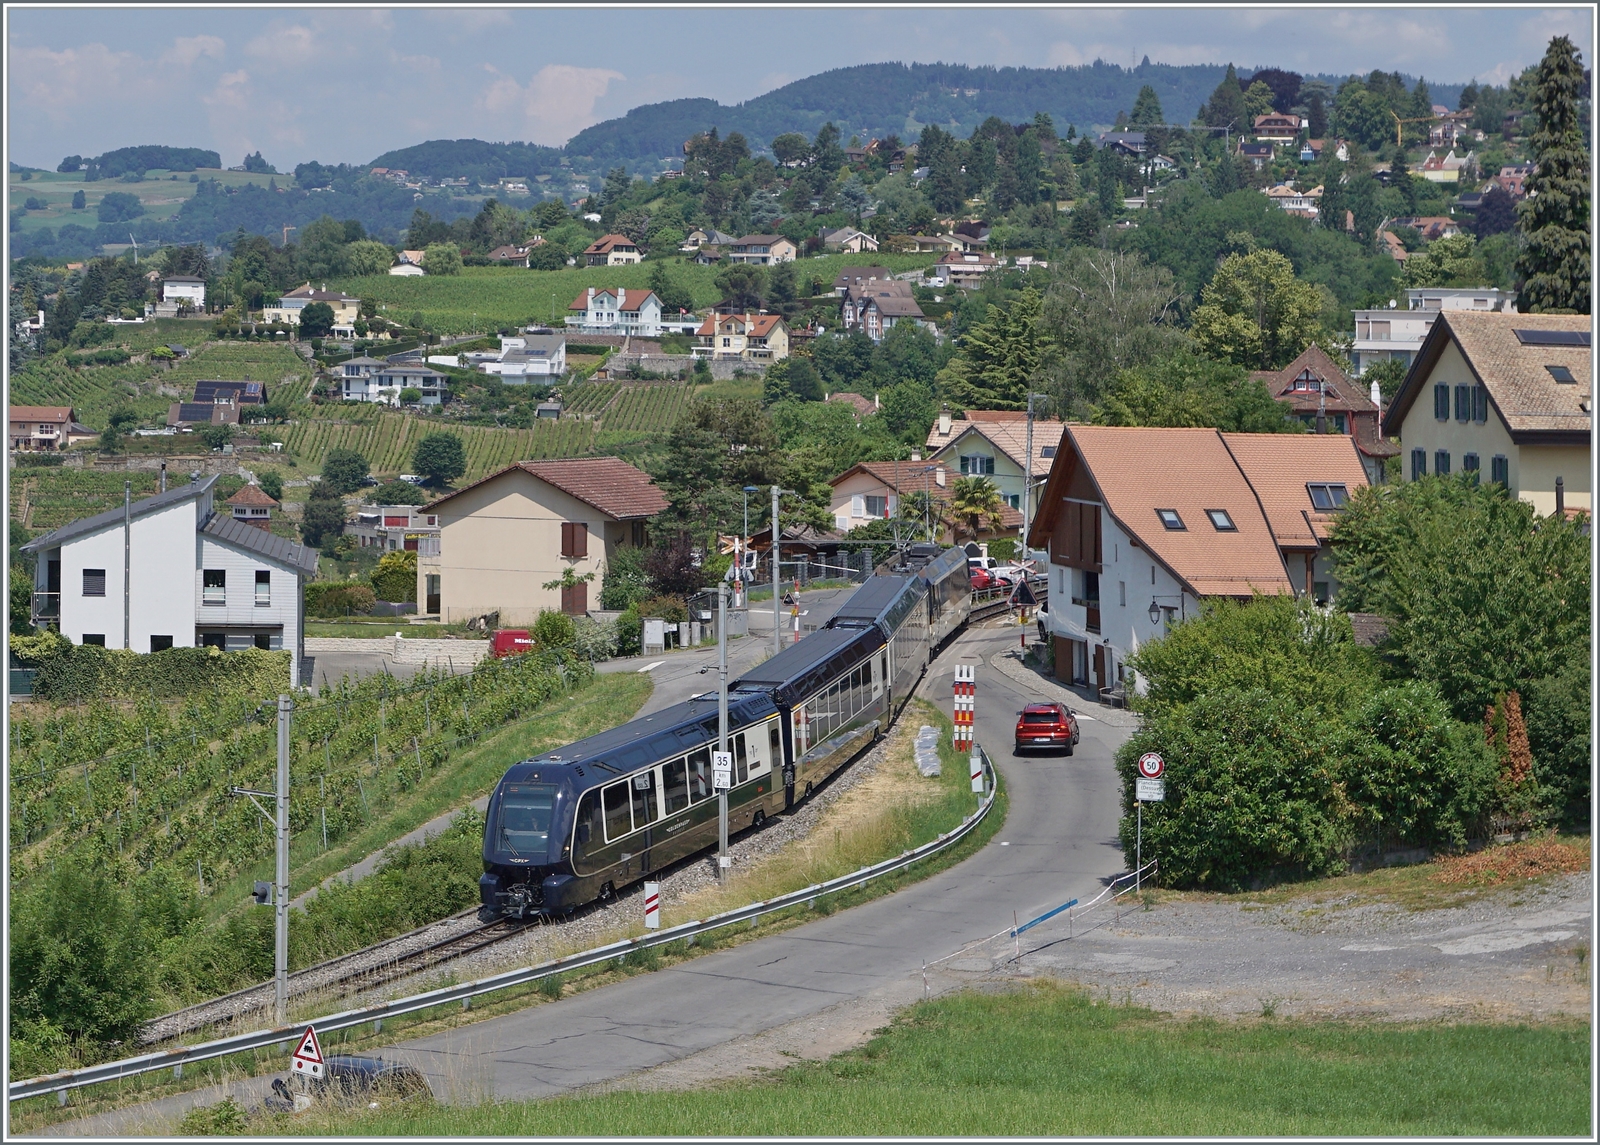 Der GPX 4065 von ZWEISIMMEN nach Montreux bei Planchamp. Entgegen der Werbung der MOB mussten die Reisenden von Interlaken in Zweisimmen umsteigen, eine Tatsache, welche im Fahrplan mehr als geschickt versteckt wird. Der Zug führt interessanter Weise nur drei Wagen, der Steuerwagen Seite Zweisimen fehlt und sorgt somit für ein sehr gefälliges Zugsbild.

16. Juni 2023